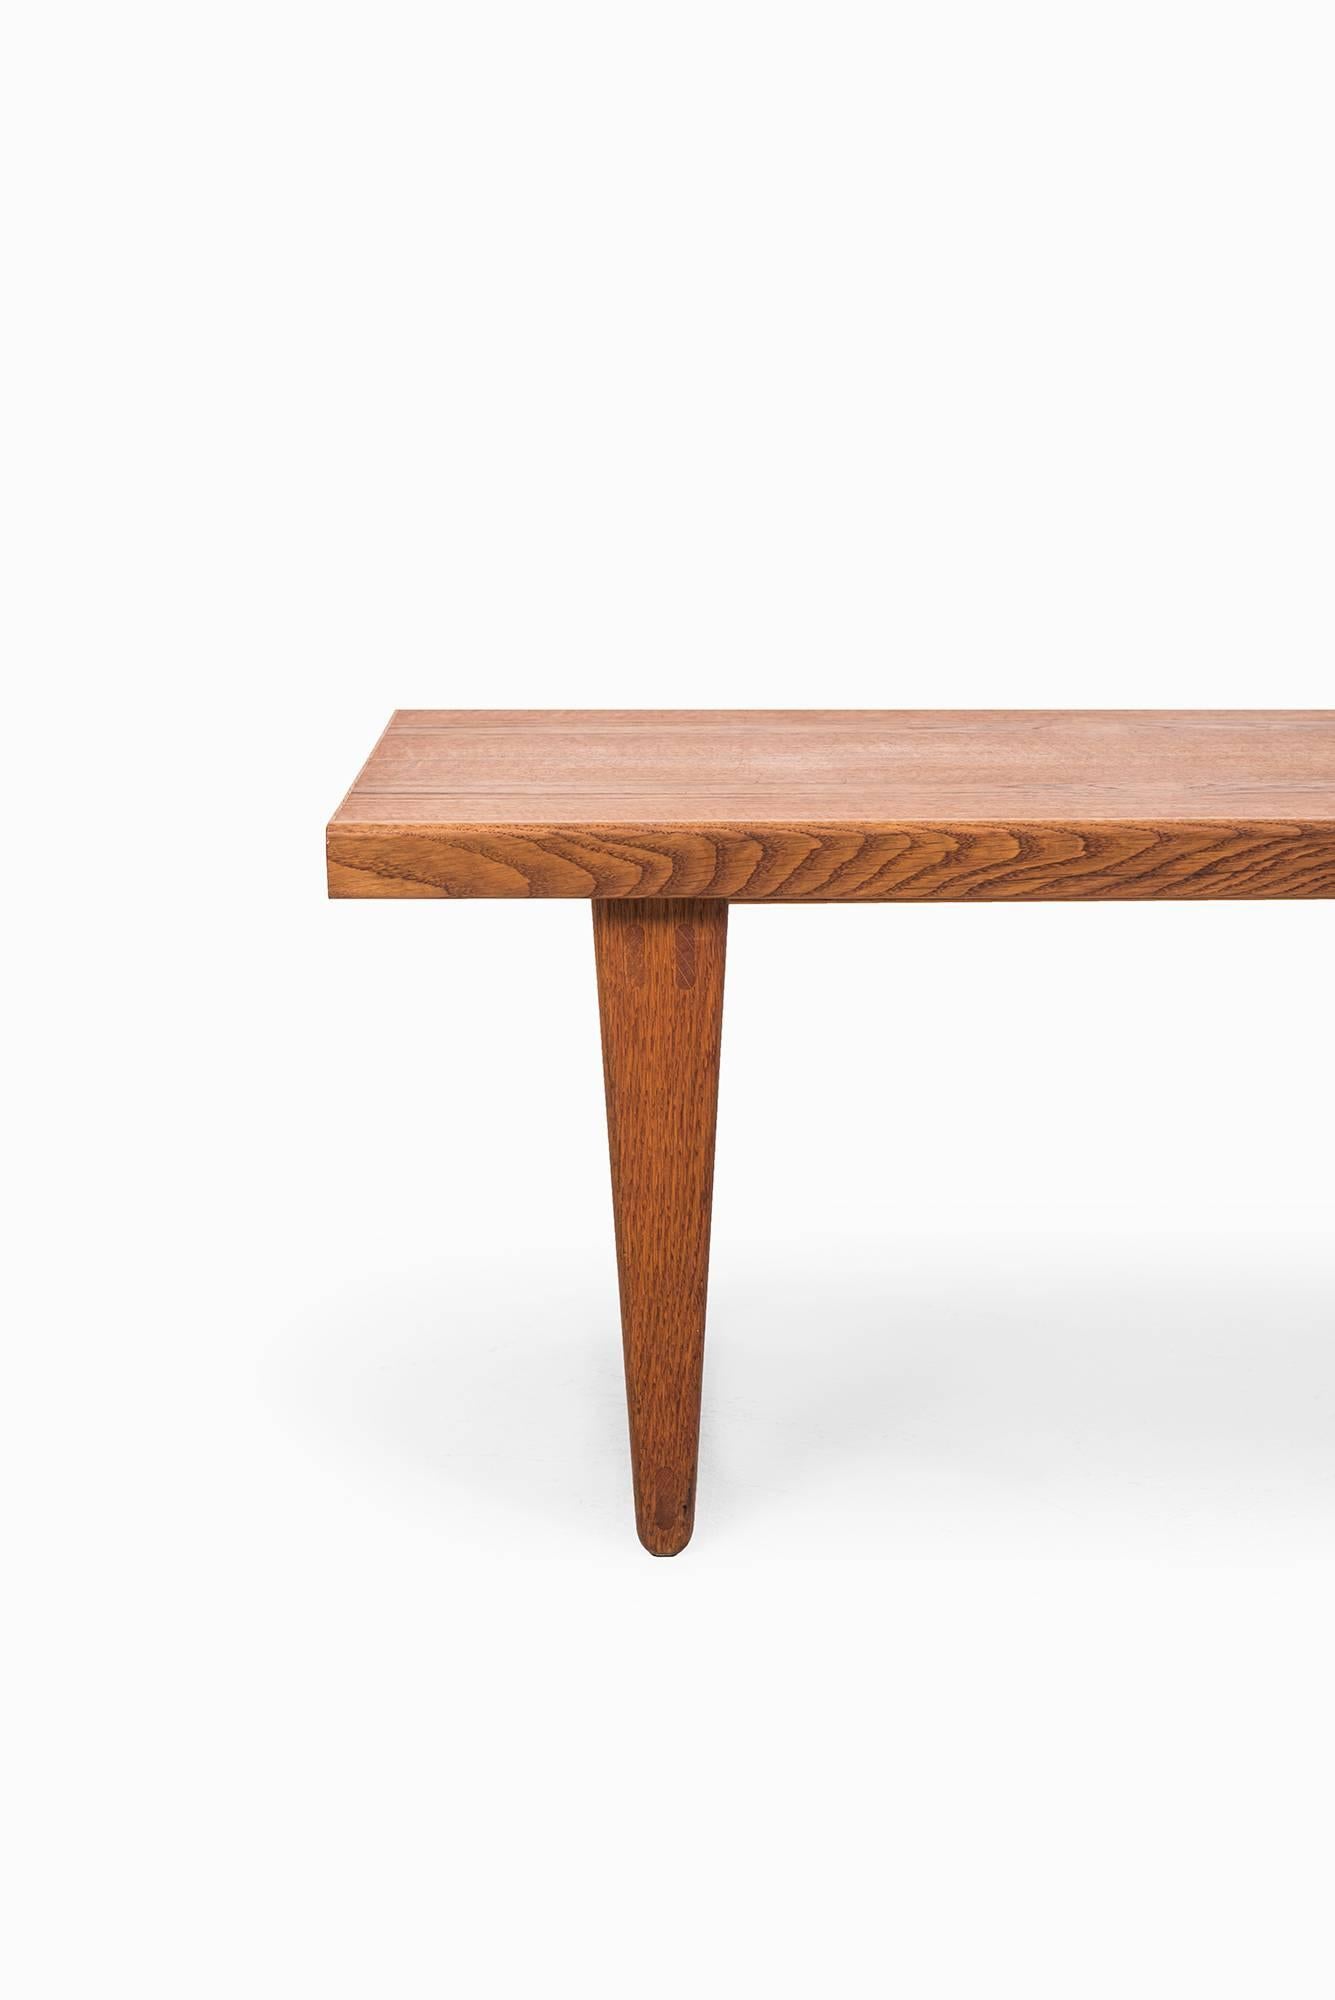 Scandinavian Modern Yngve Ekström side table / bench produced by Westbergs in Sweden